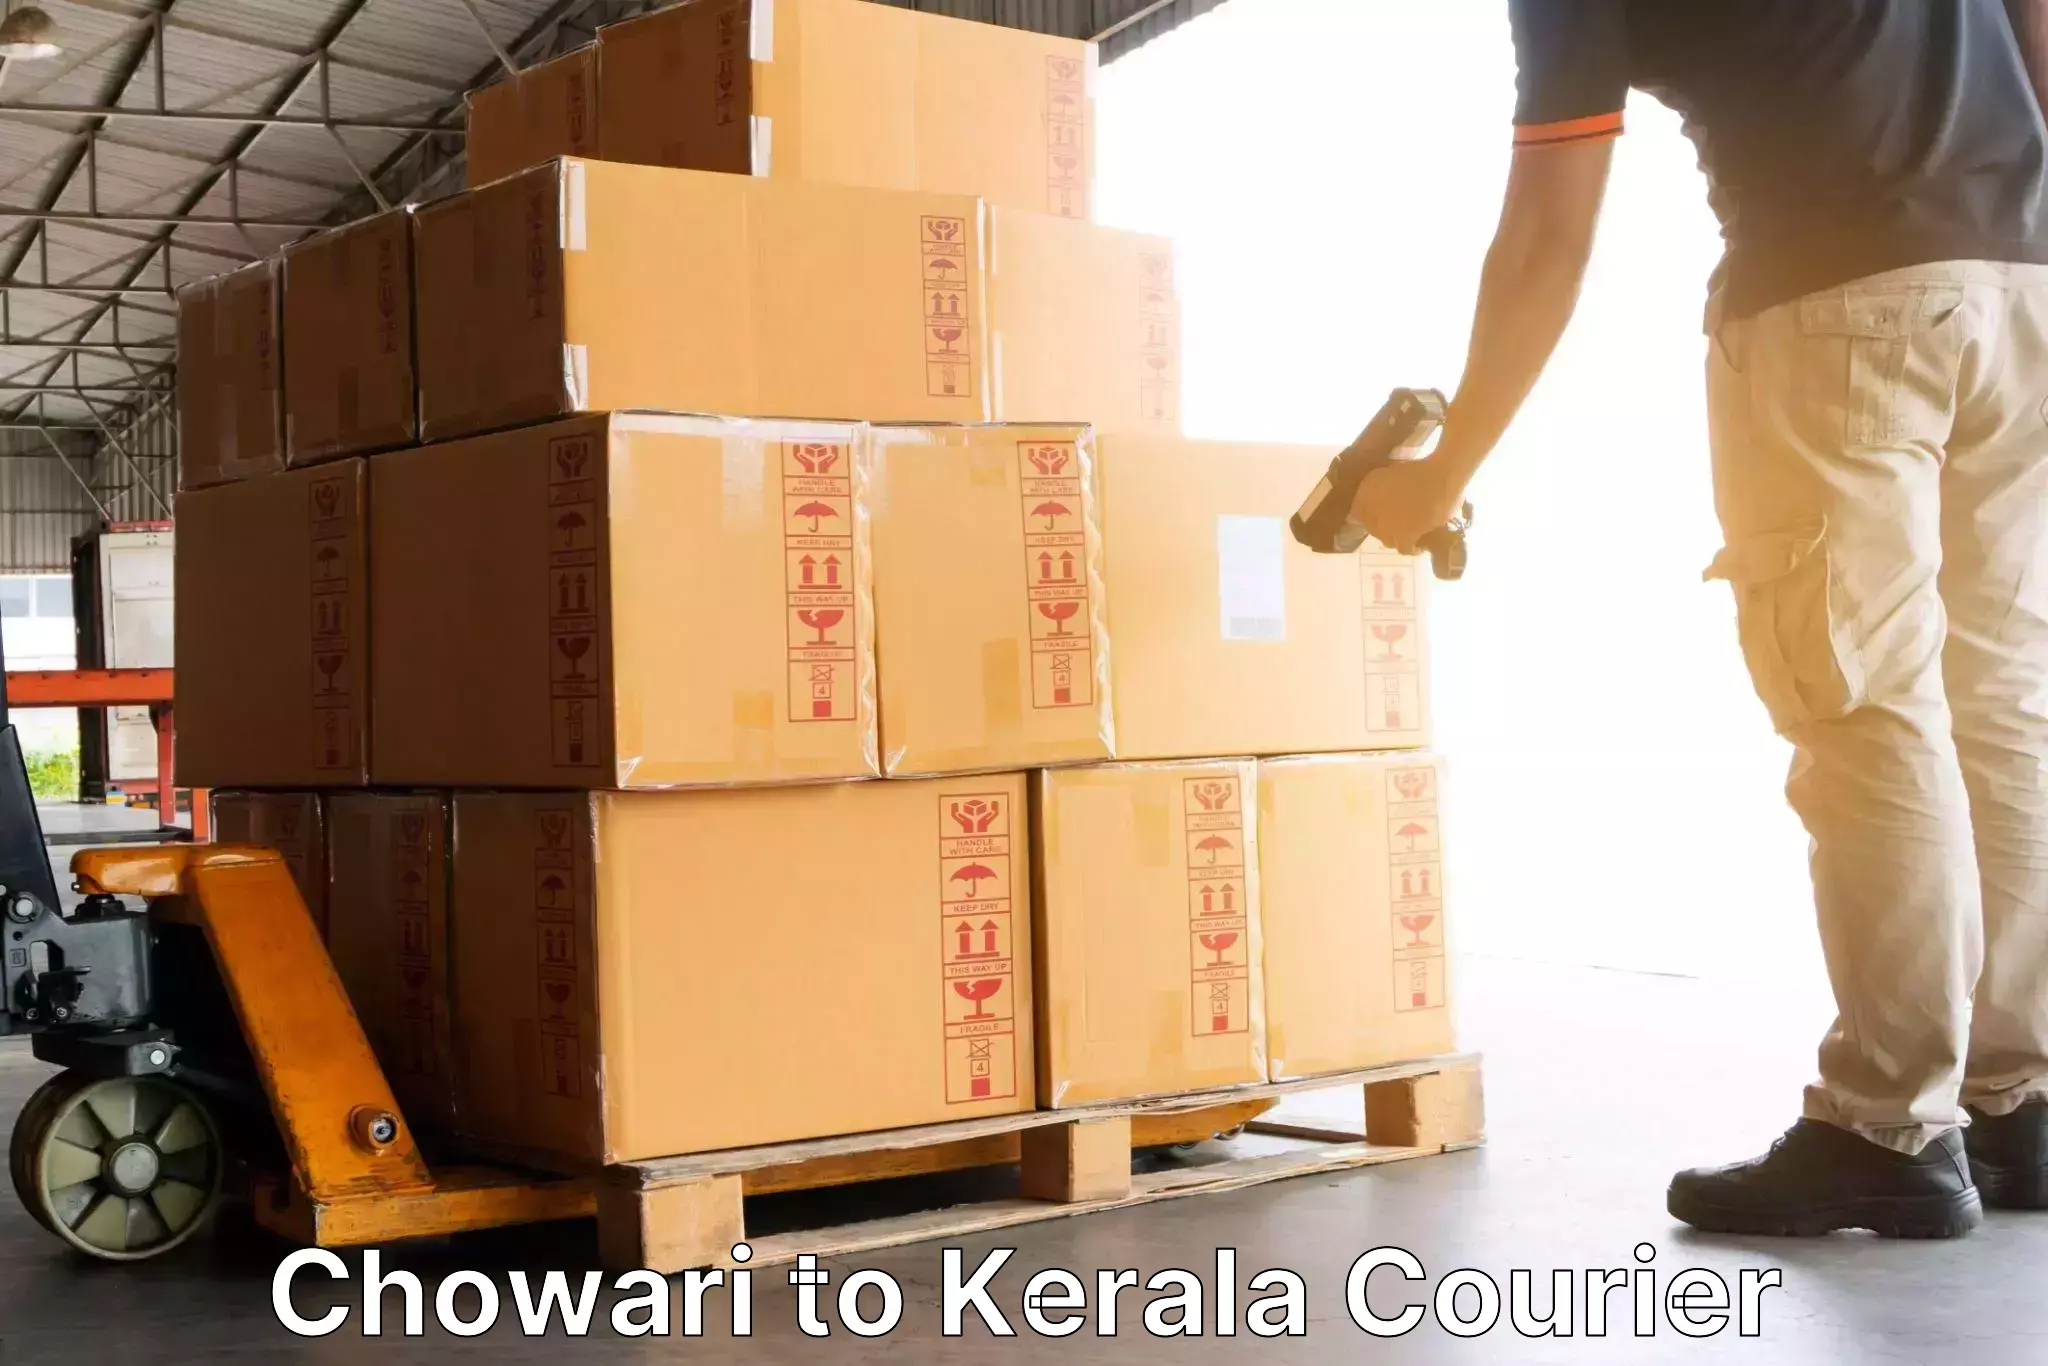 Courier service comparison Chowari to Cochin Port Kochi